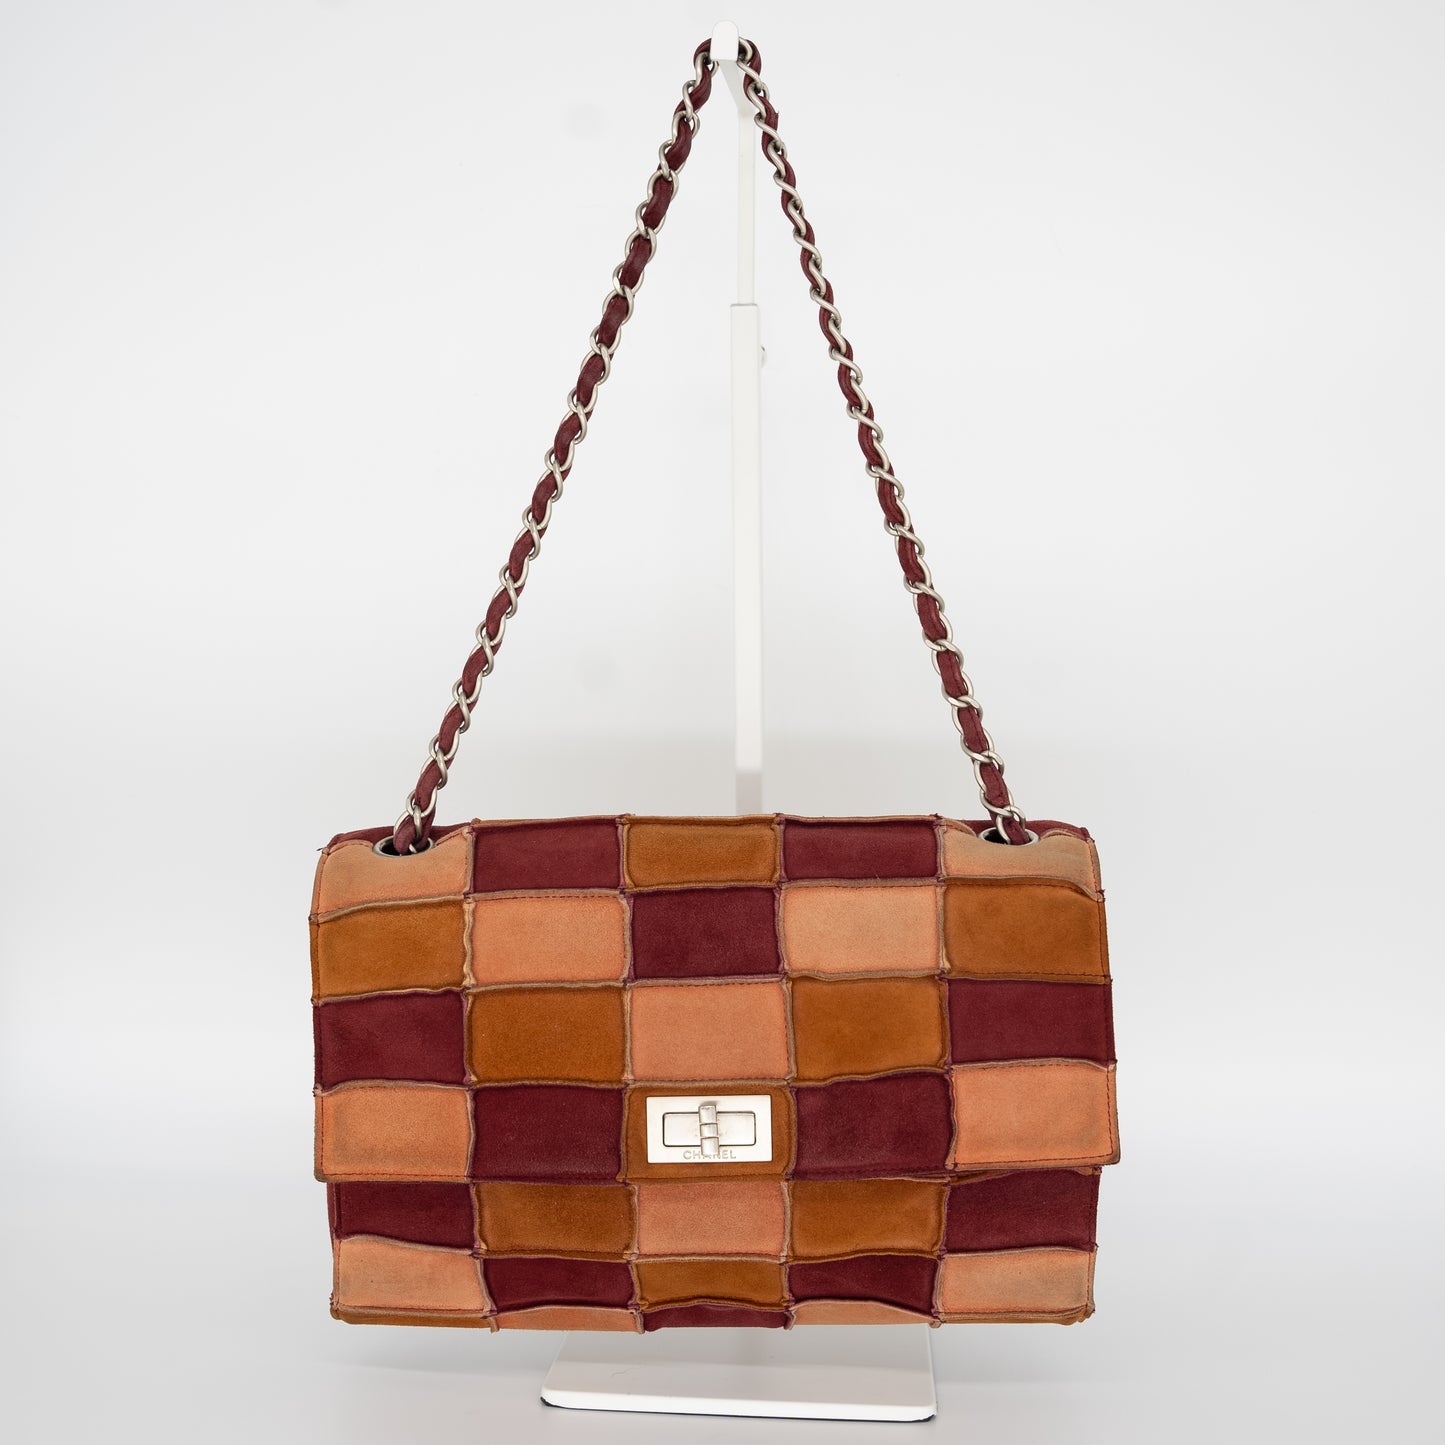 Authentic Chanel Multicolor Suede Handbag Purse